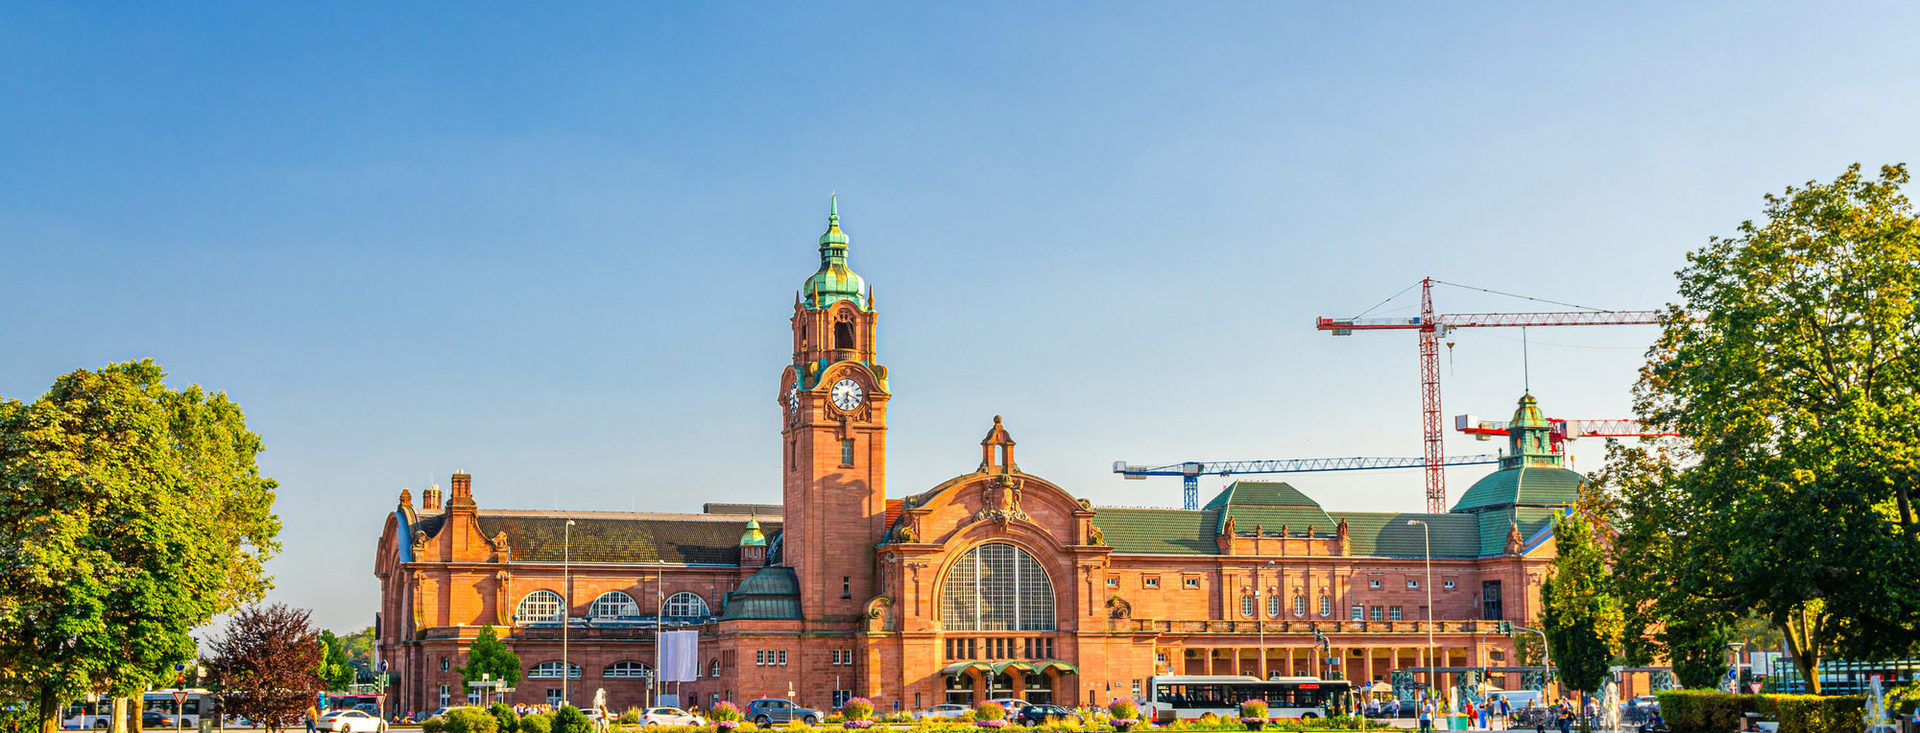 Wiesbaden Hauptbahnhof und Reisingeranlagen